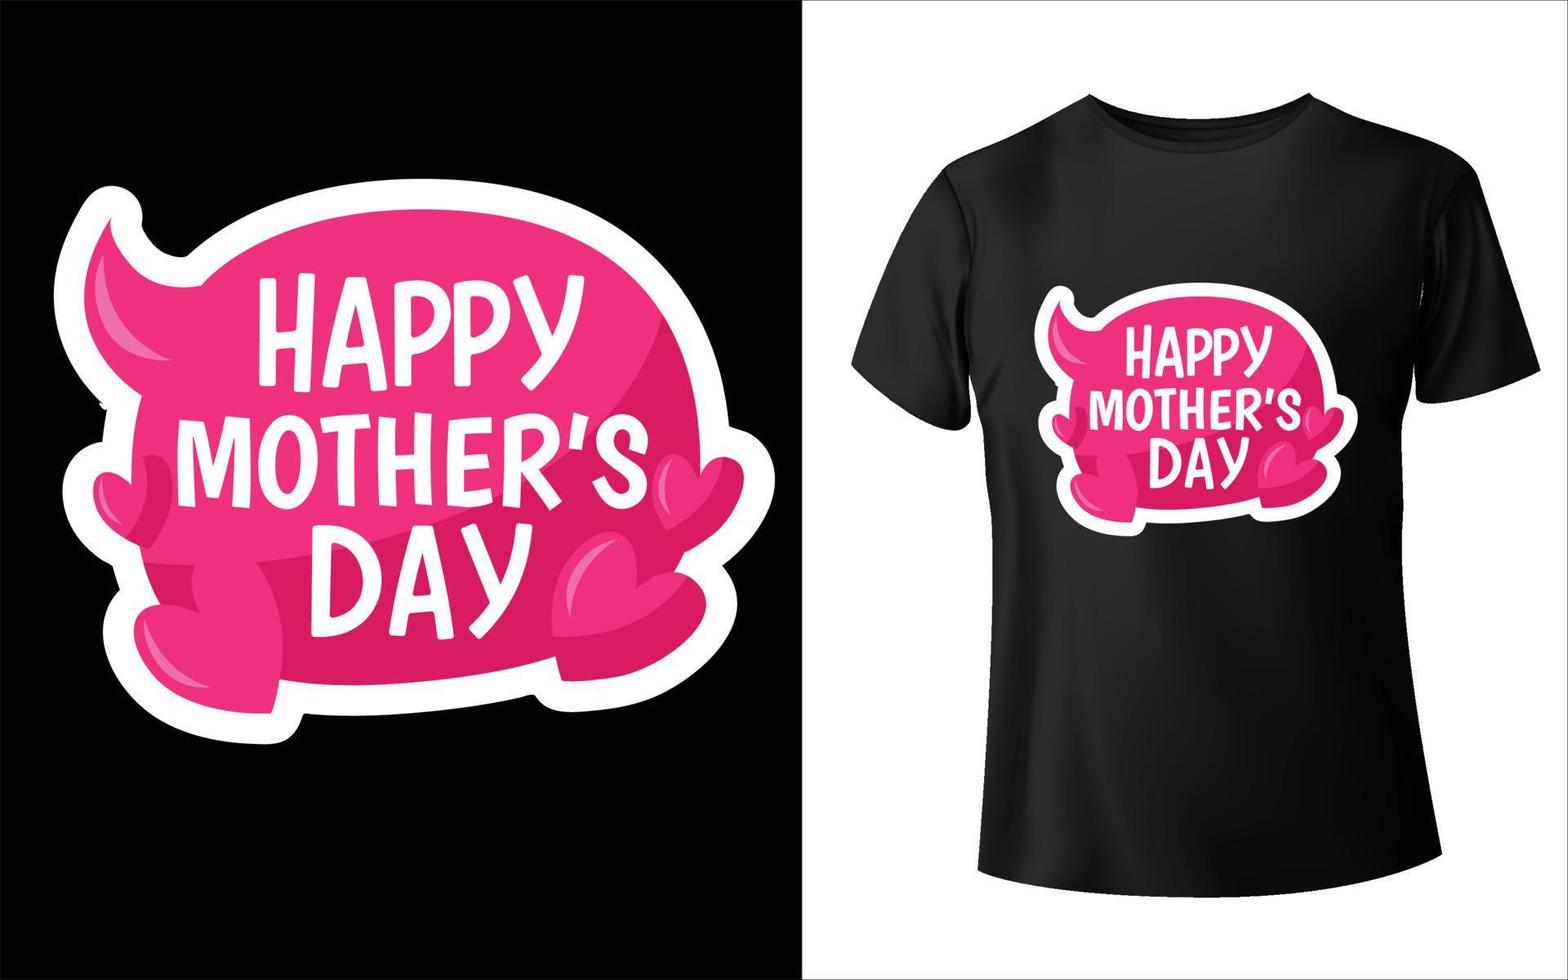 T-Shirt-Design zum Muttertag. Mama-Vektor, Vektorgrafiken, Mama-T-Shirt-Design vektor